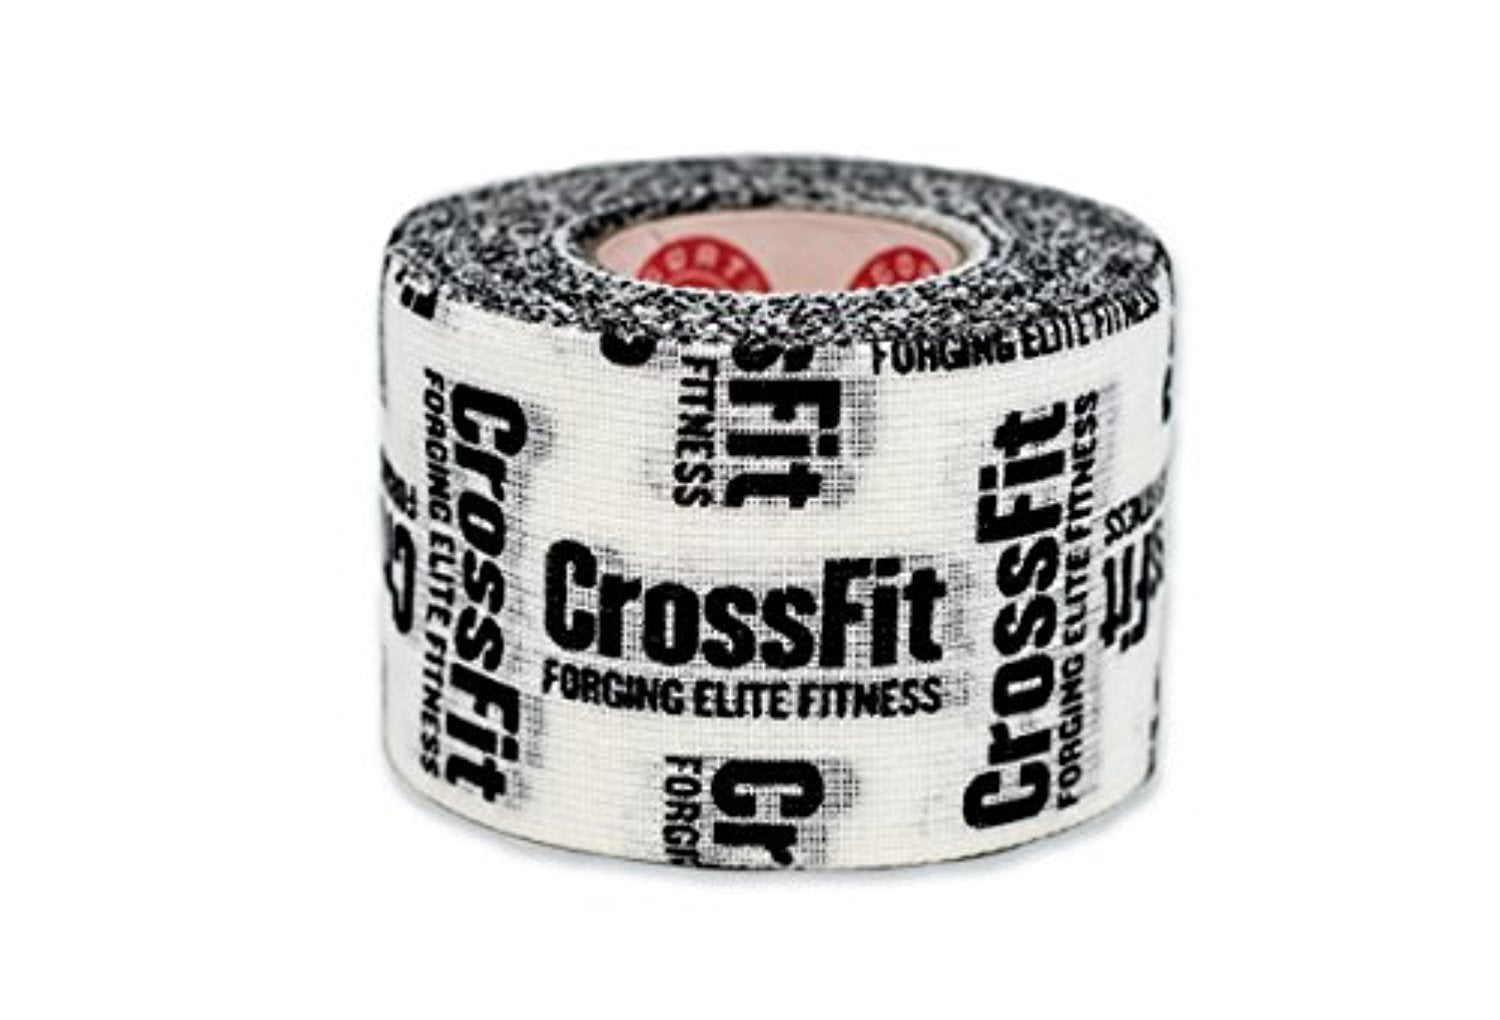 Crossfit Premium Athletic Weightlifting Tape. Designed